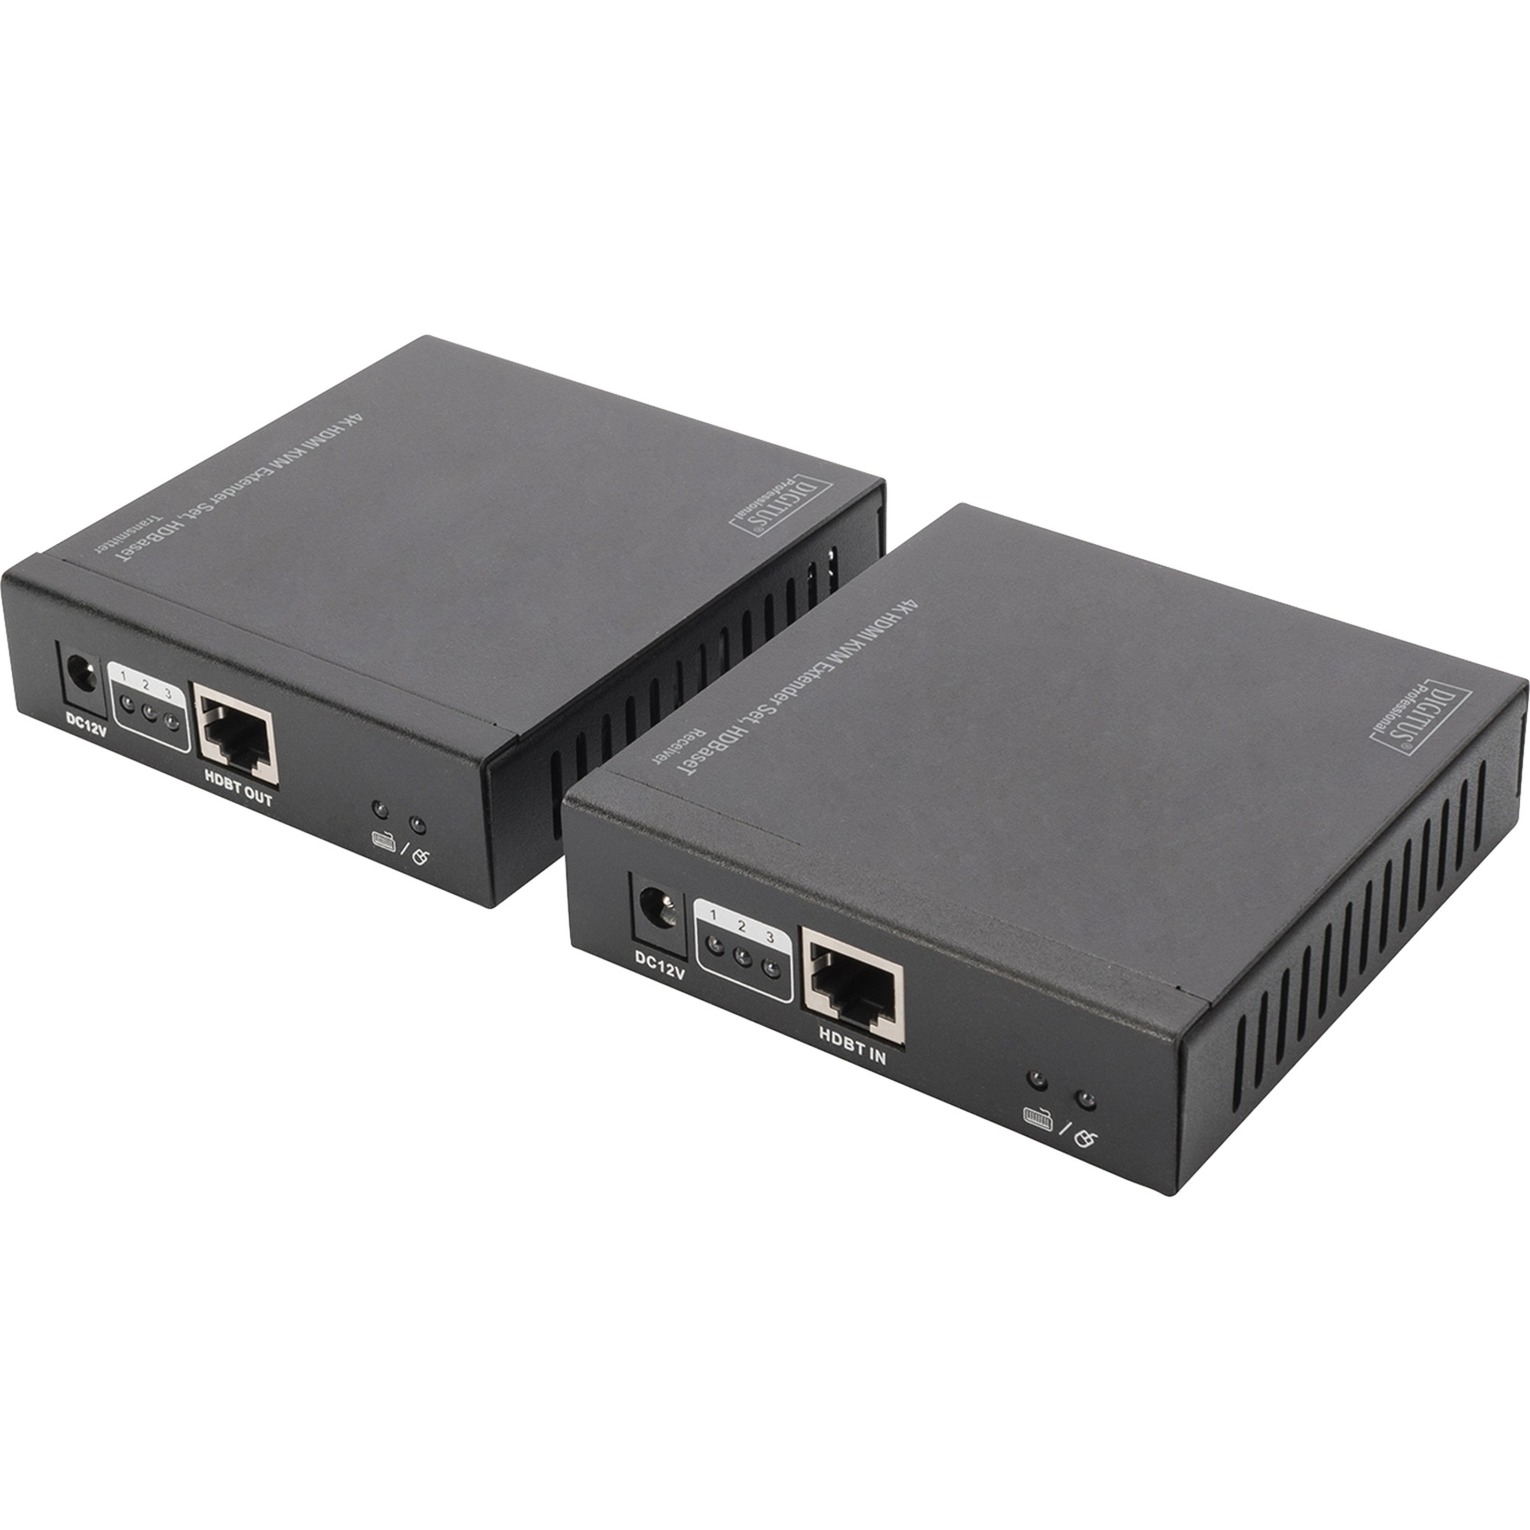 DS-55502 przed?u?acz AV AV transmitter & receiver Czarny, HDMI switch